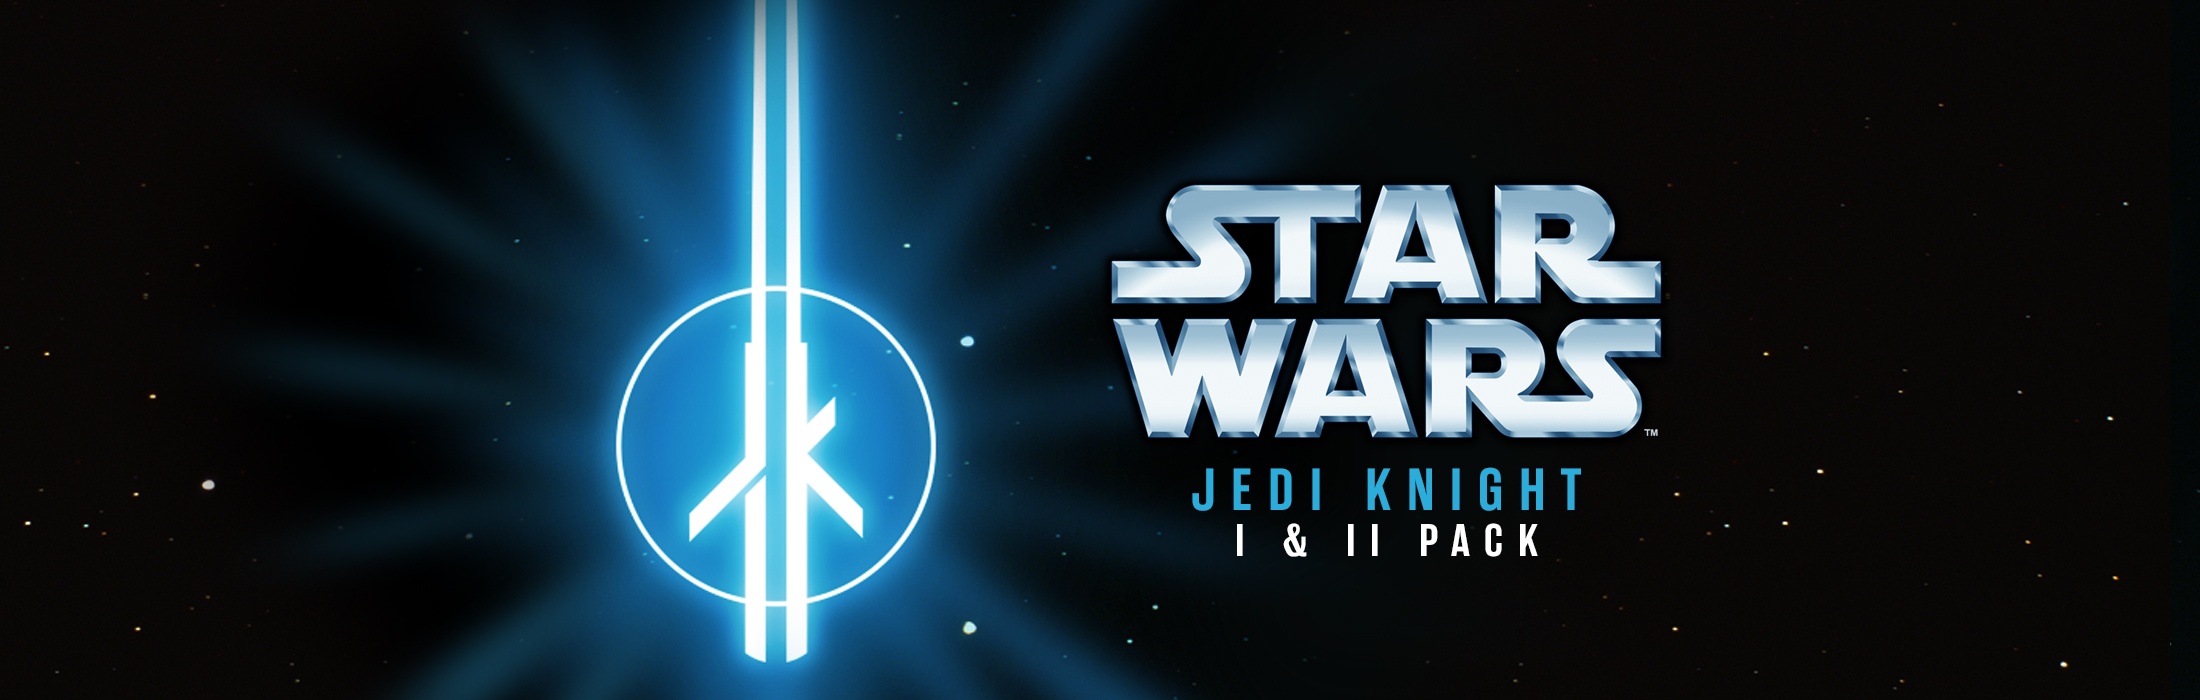 STAR WARS Jedi Knight I & II Pack para PC (Steam)